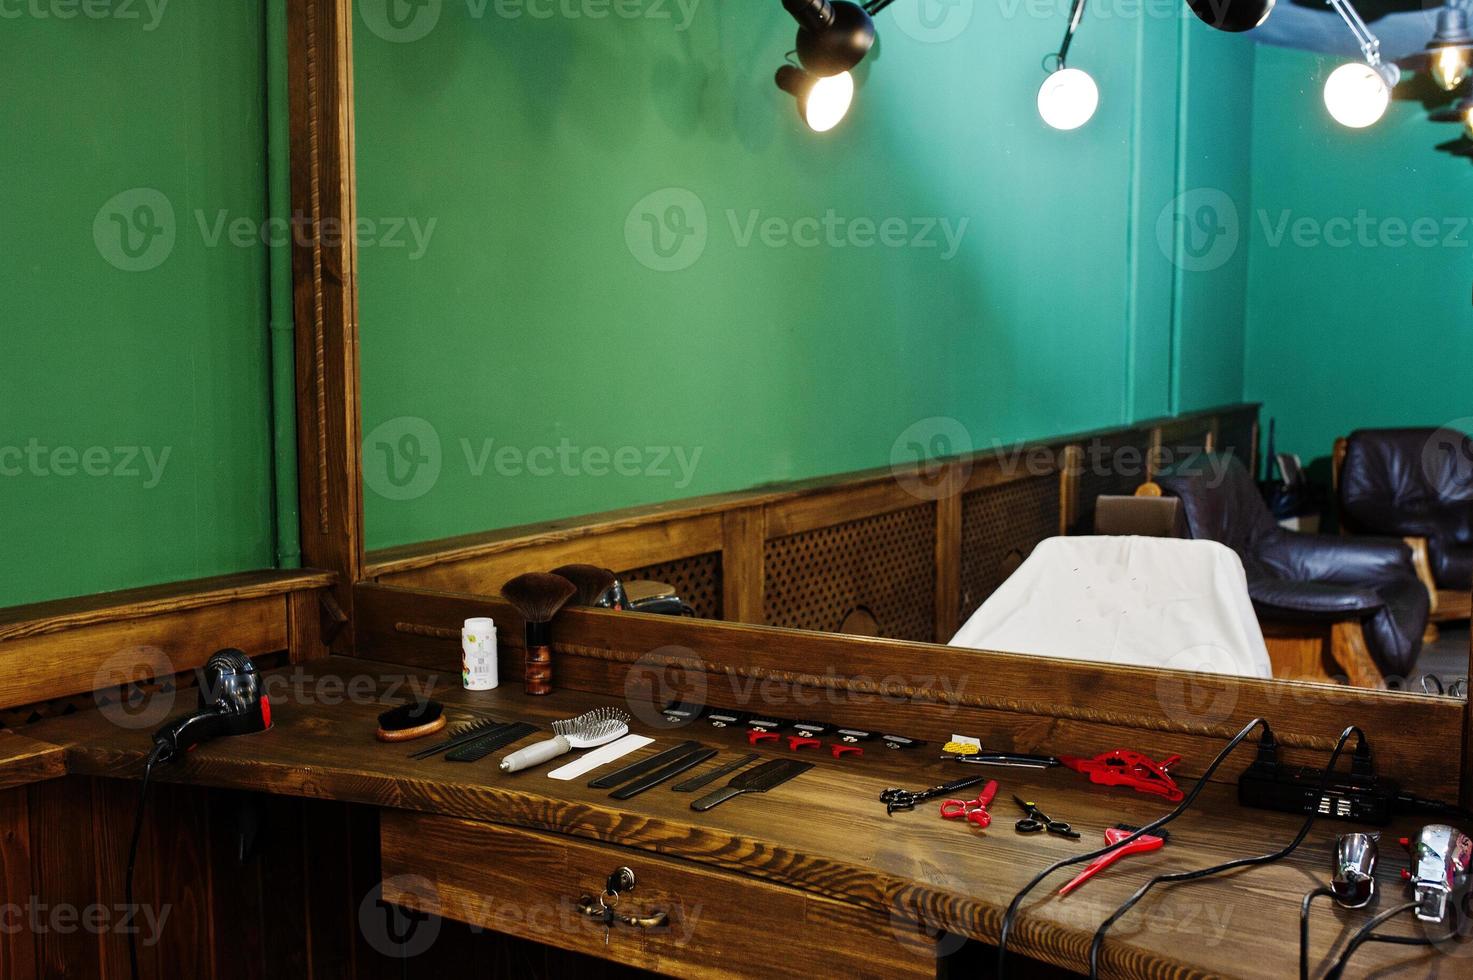 equipamento de barbeiro na superfície de trabalho pelo espelho na barbearia. foto